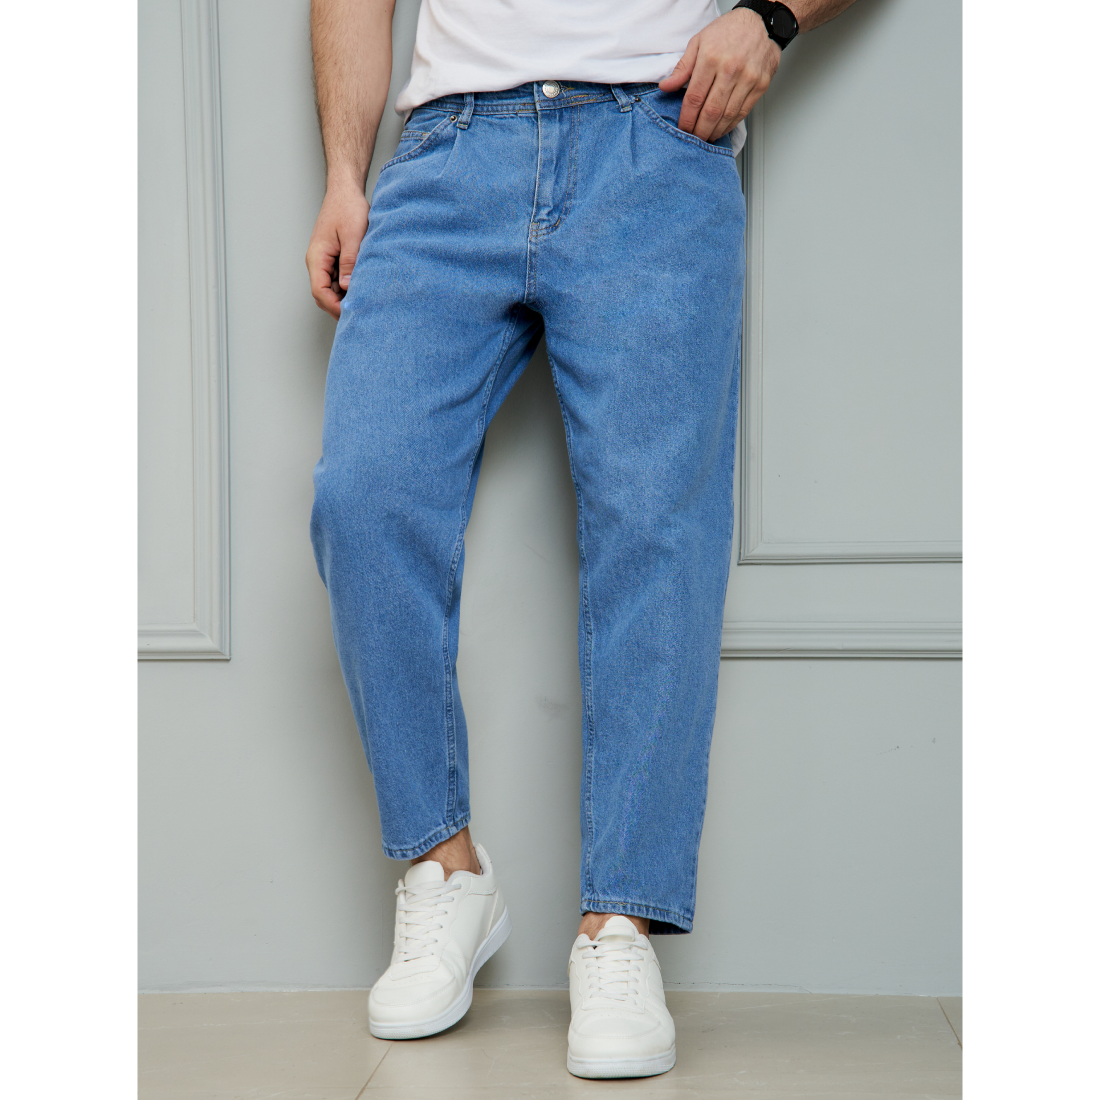 Джинсы мужские Barouz Jeans Tnvl-bnn синие 36